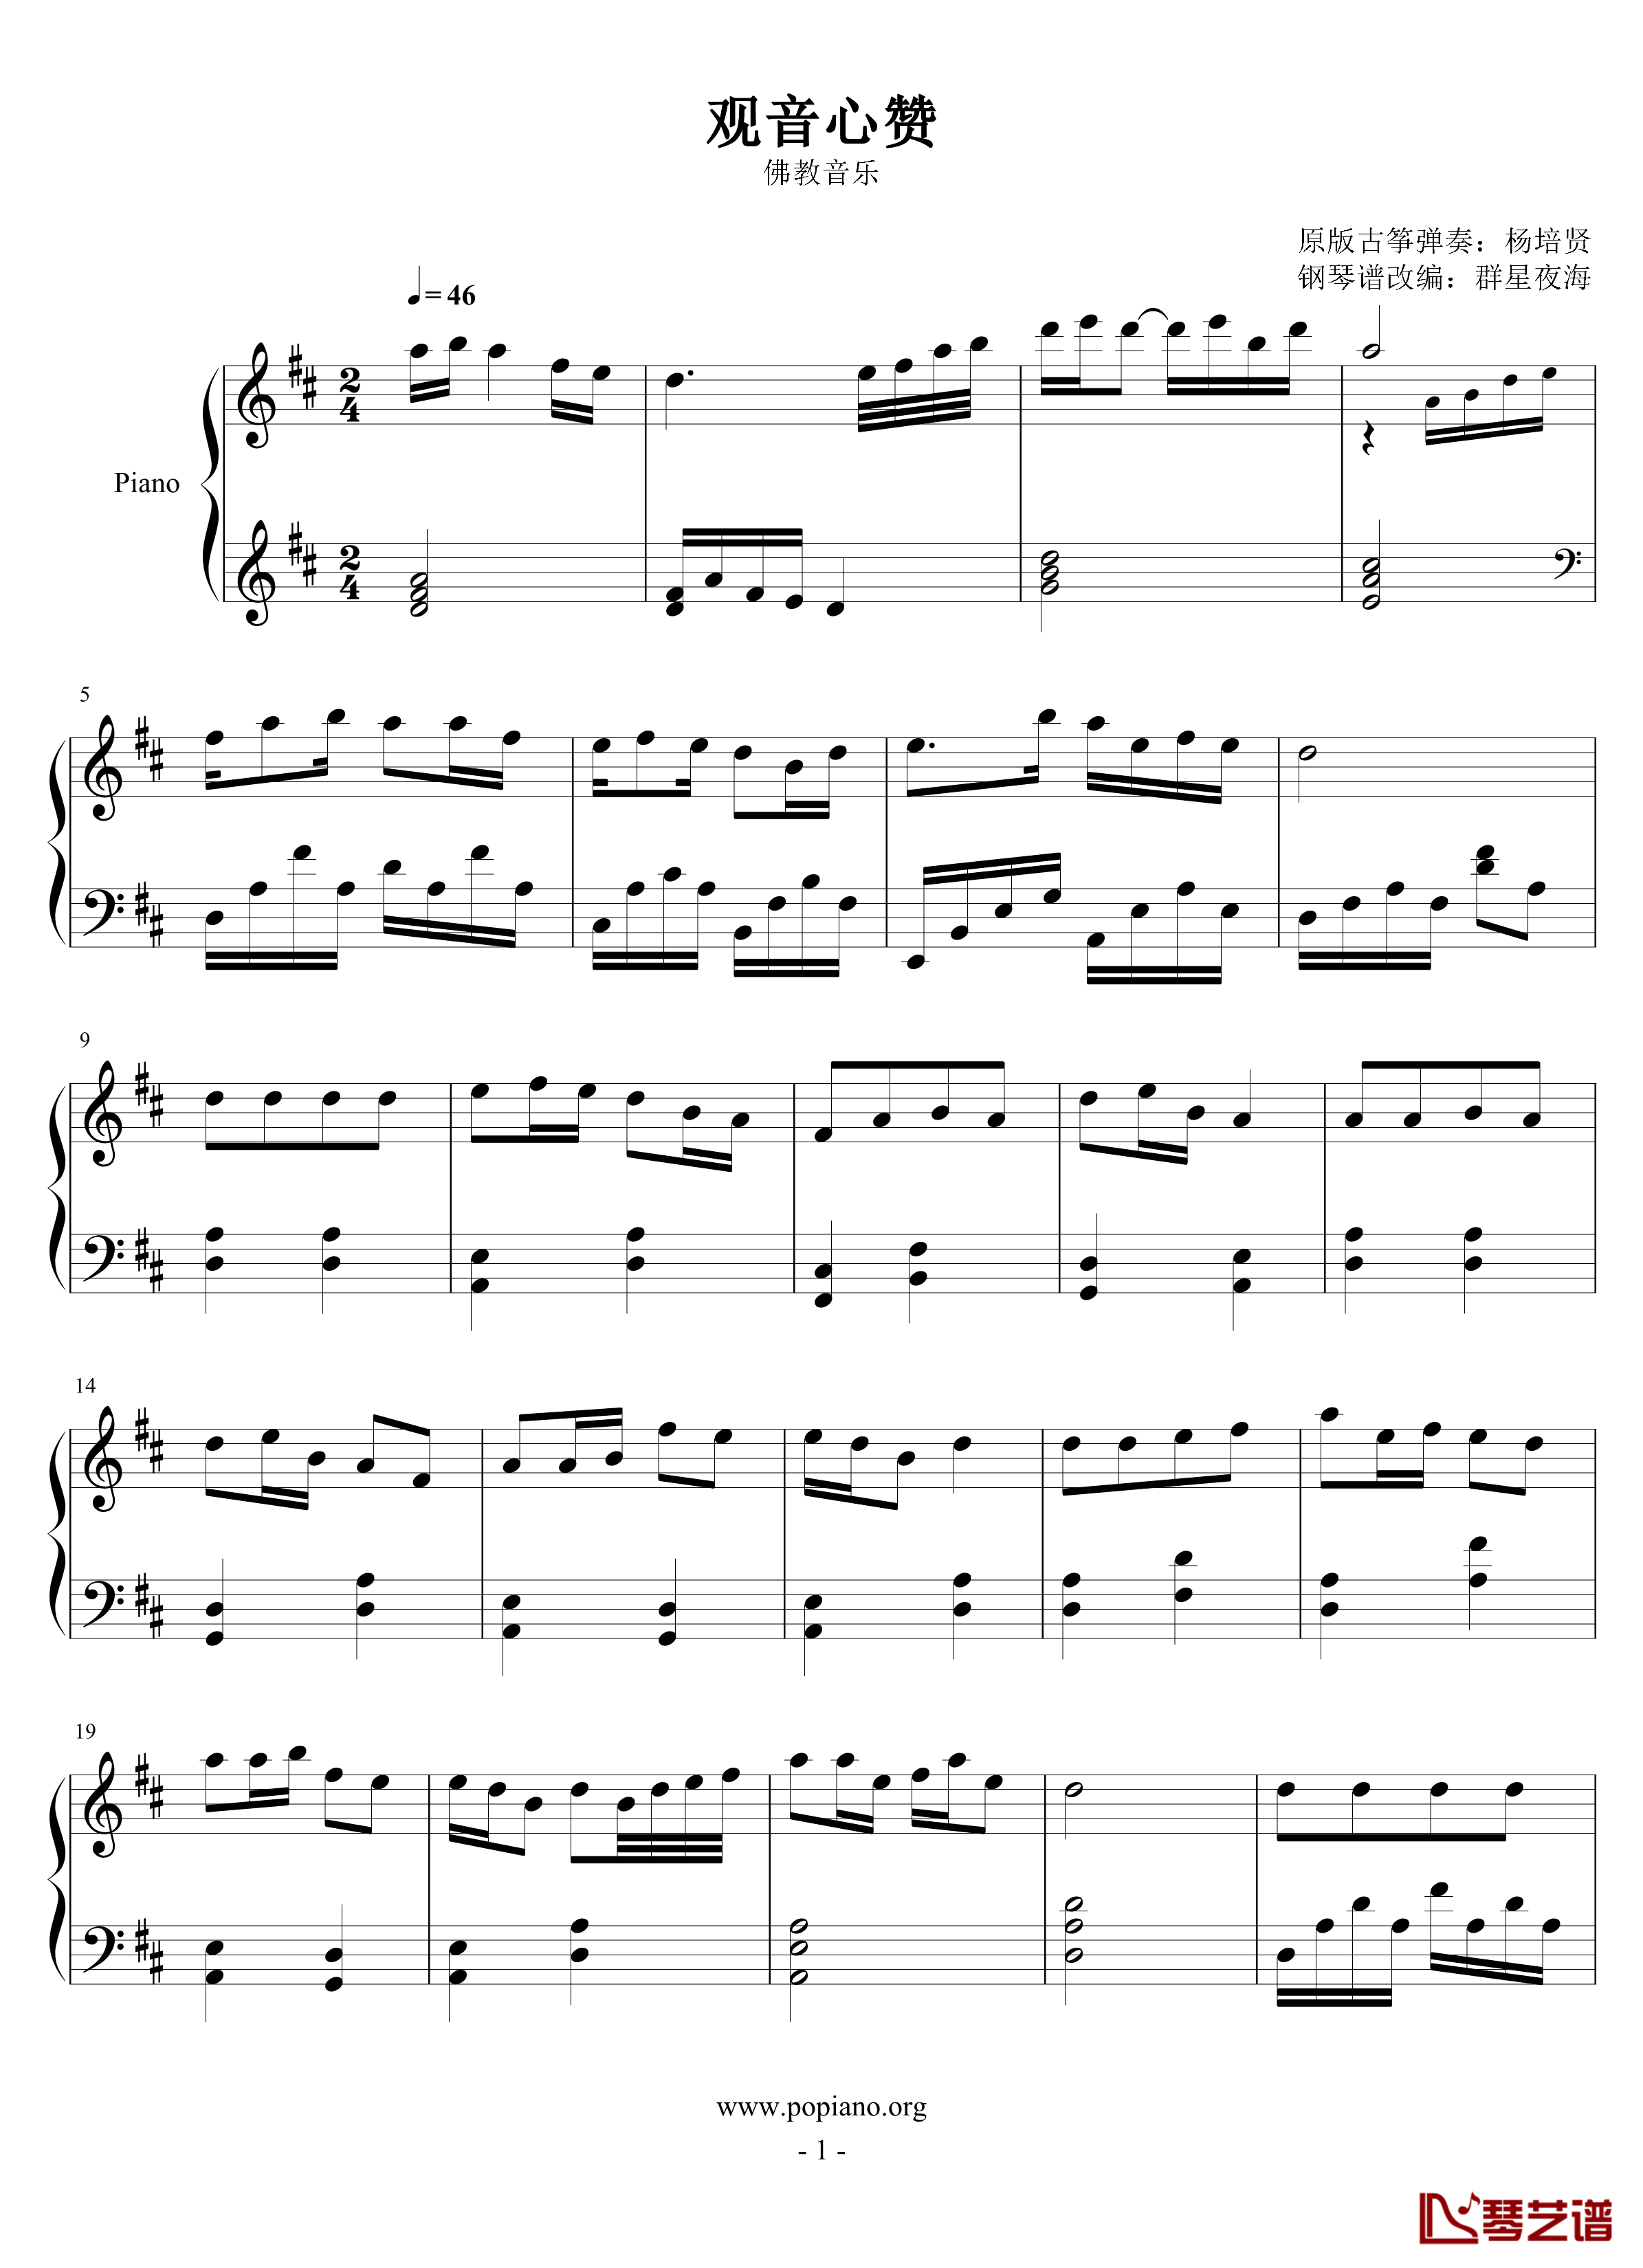 观音心赞钢琴谱-2.0完美版-佛教音乐